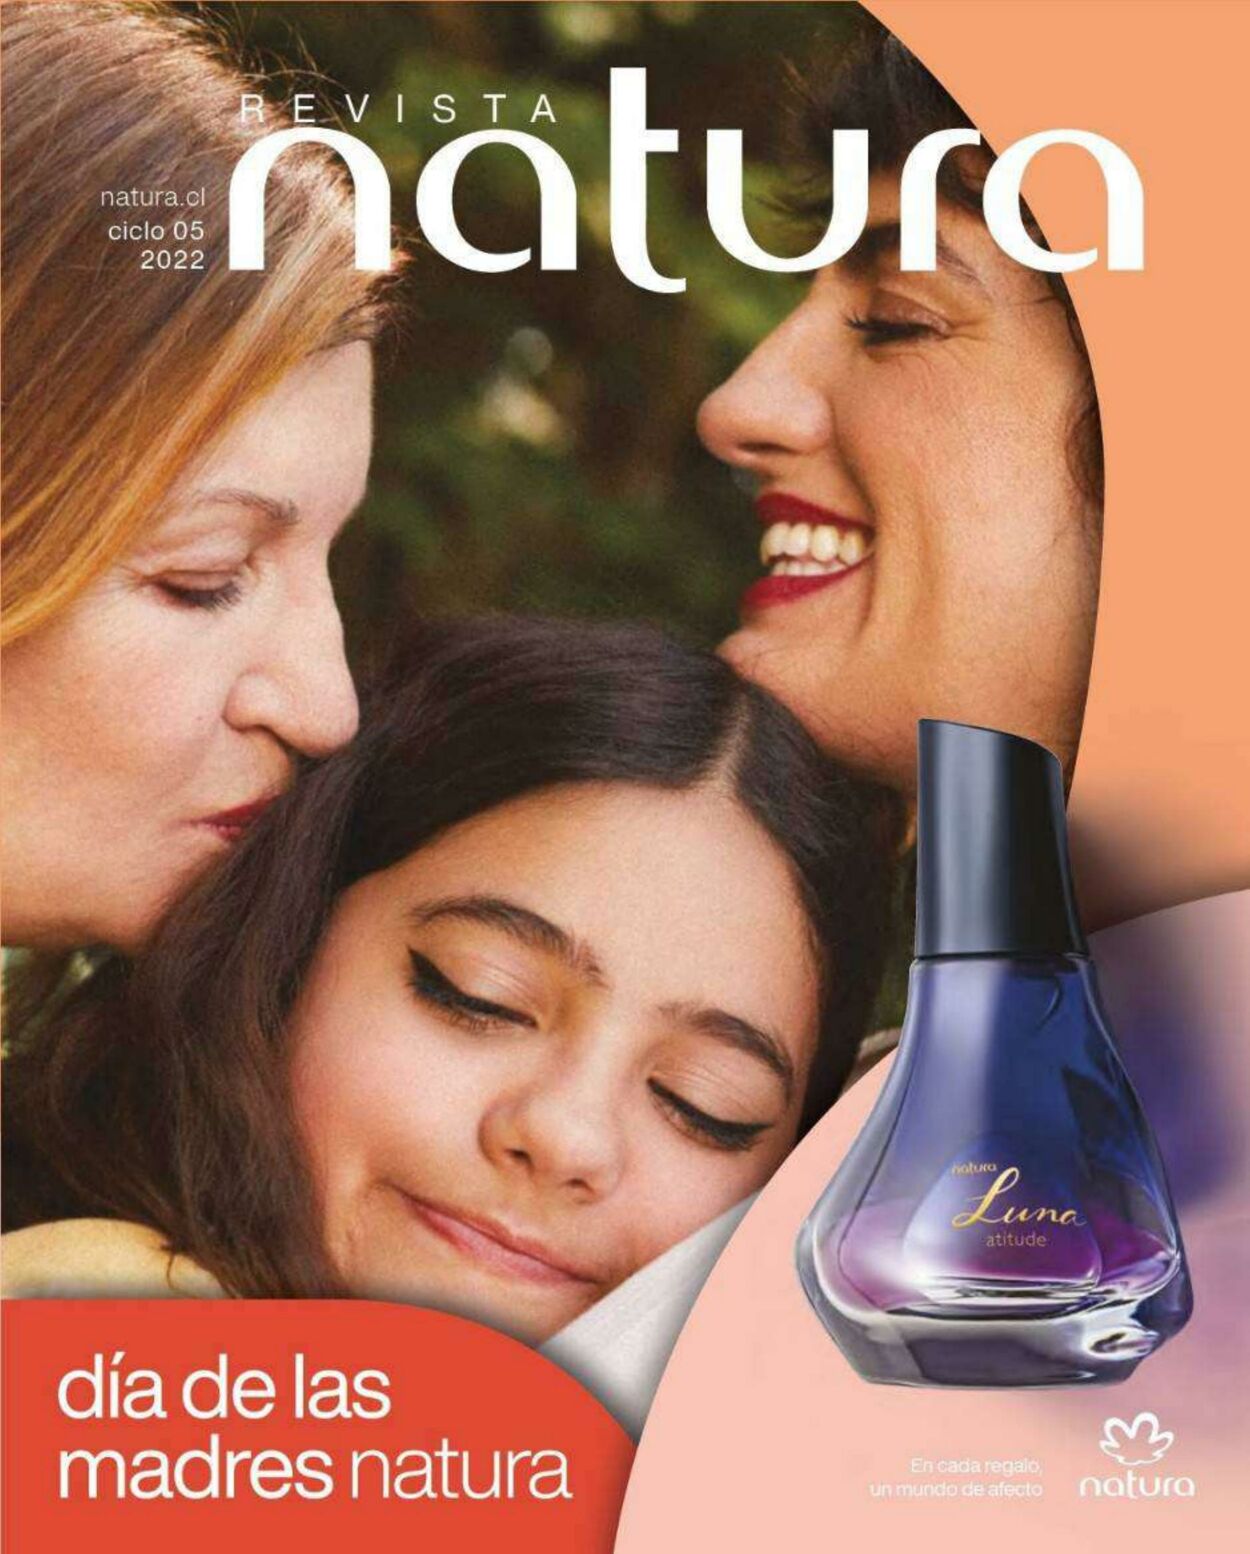 Natura Catálogo Promocional - Día de la Madre 2022 - Válido del  al   - Página nº 1 